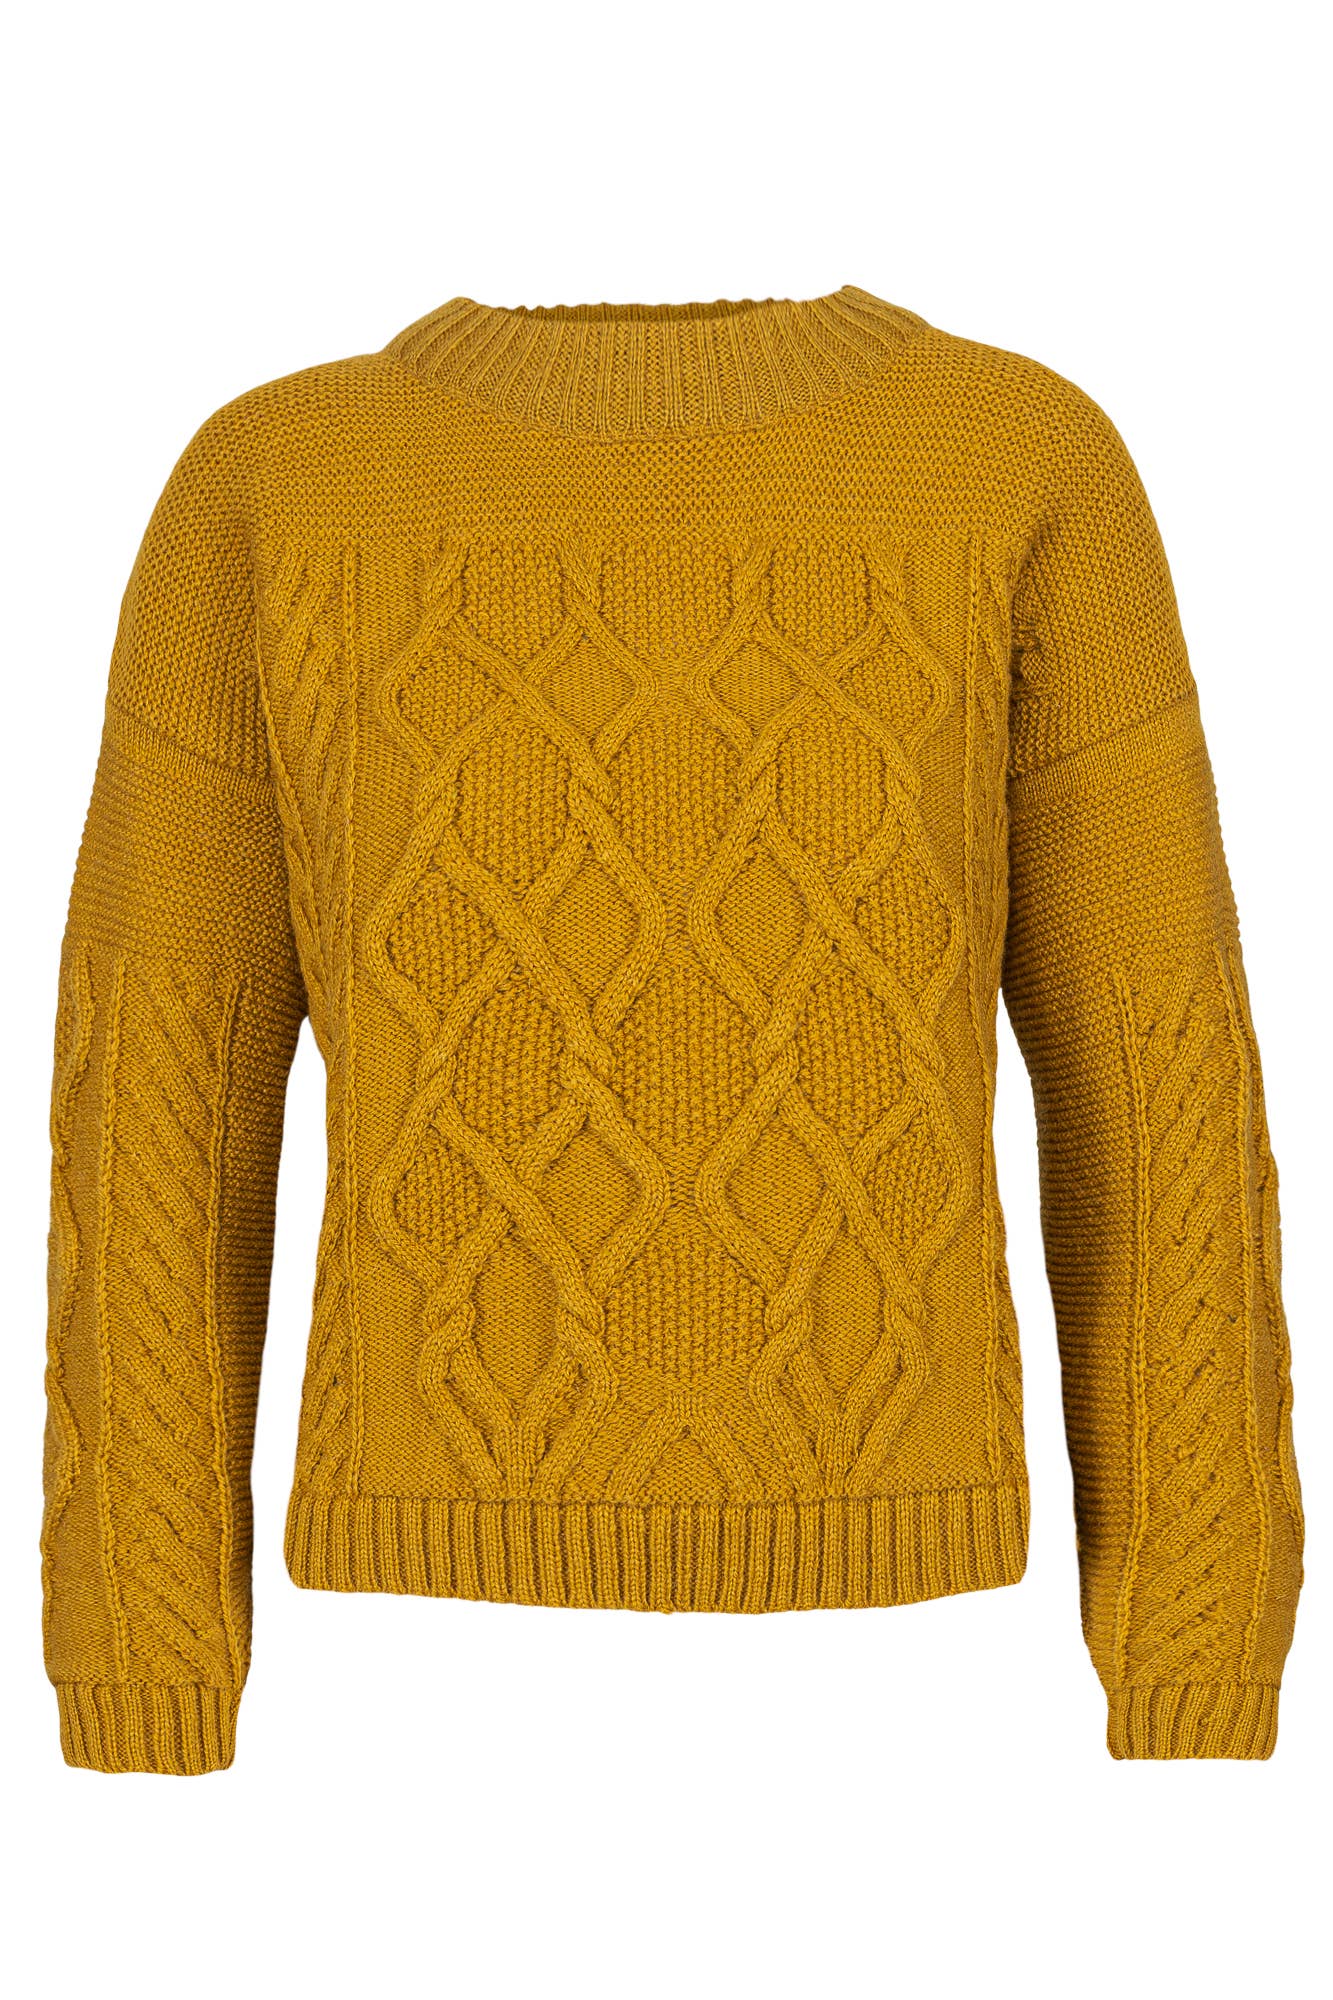 Tora Wool Aran Sweater